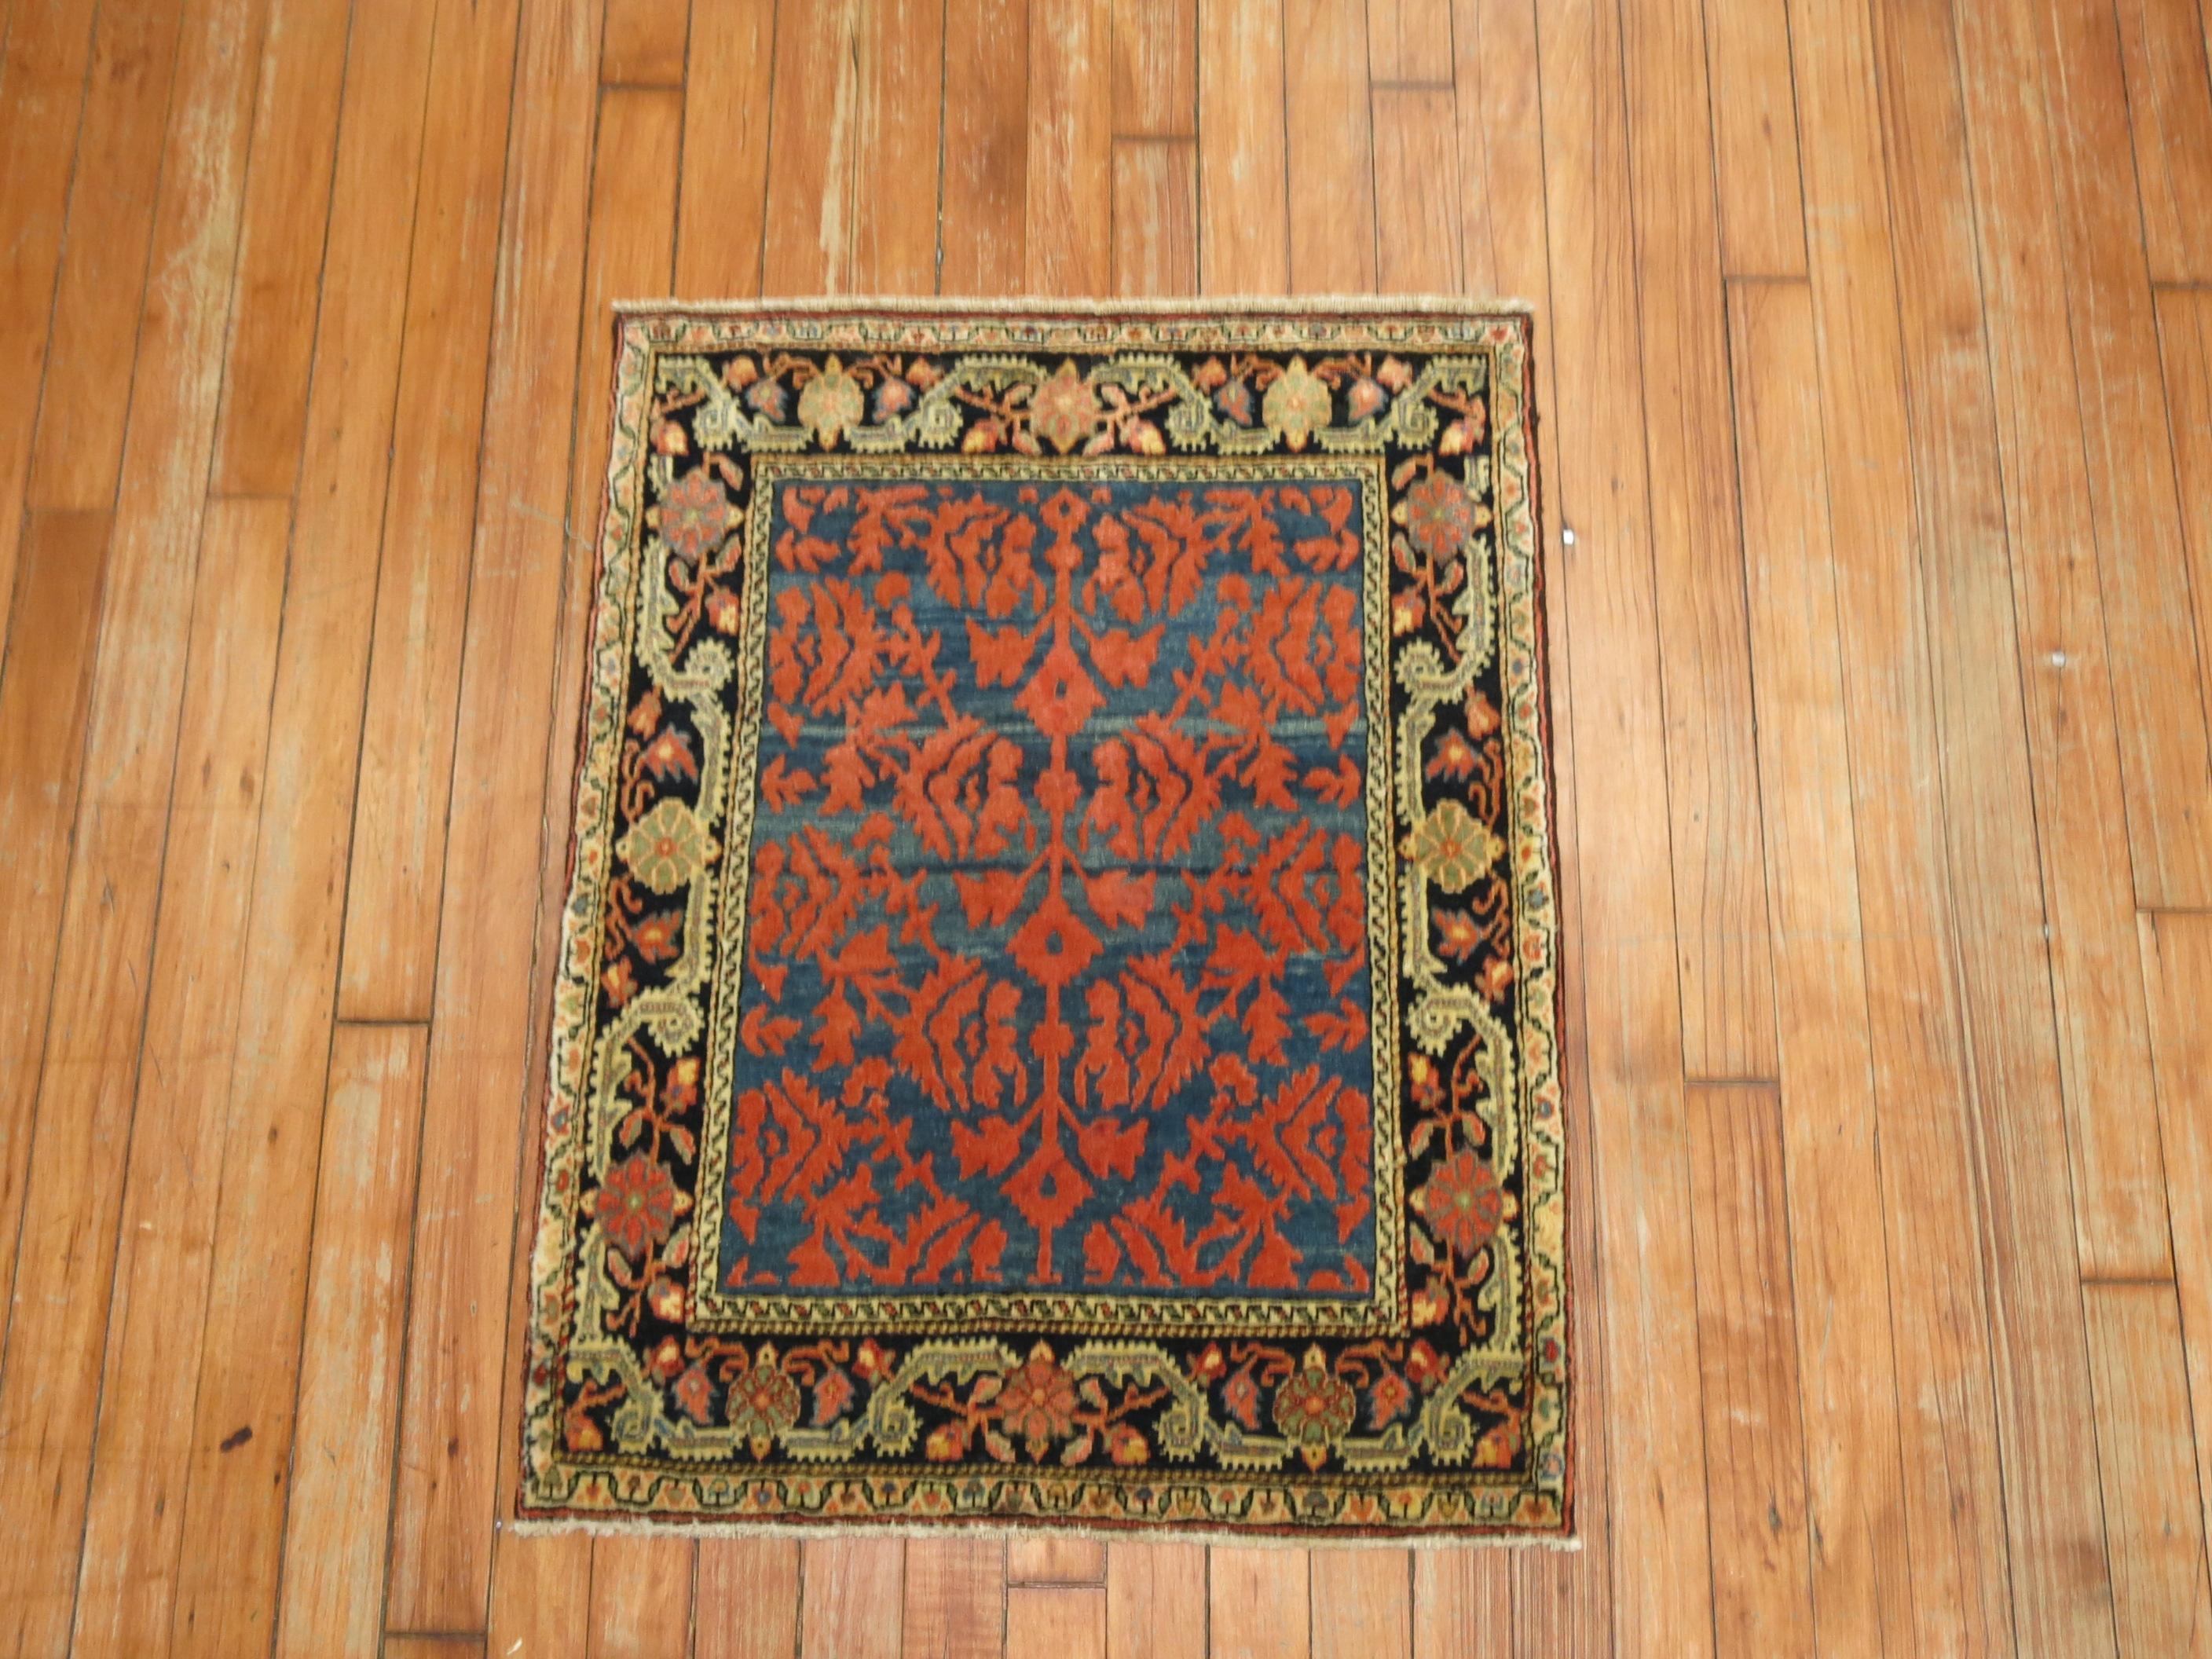 Un tapis Souf du début du 20e siècle, tissé quelque part en Iran. 

Les tapis souf sont des techniques très rares car ils ont une technique de poils élevés et bas. Ils sont populaires en Iran et peu compris ailleurs, sauf par les Perses et les